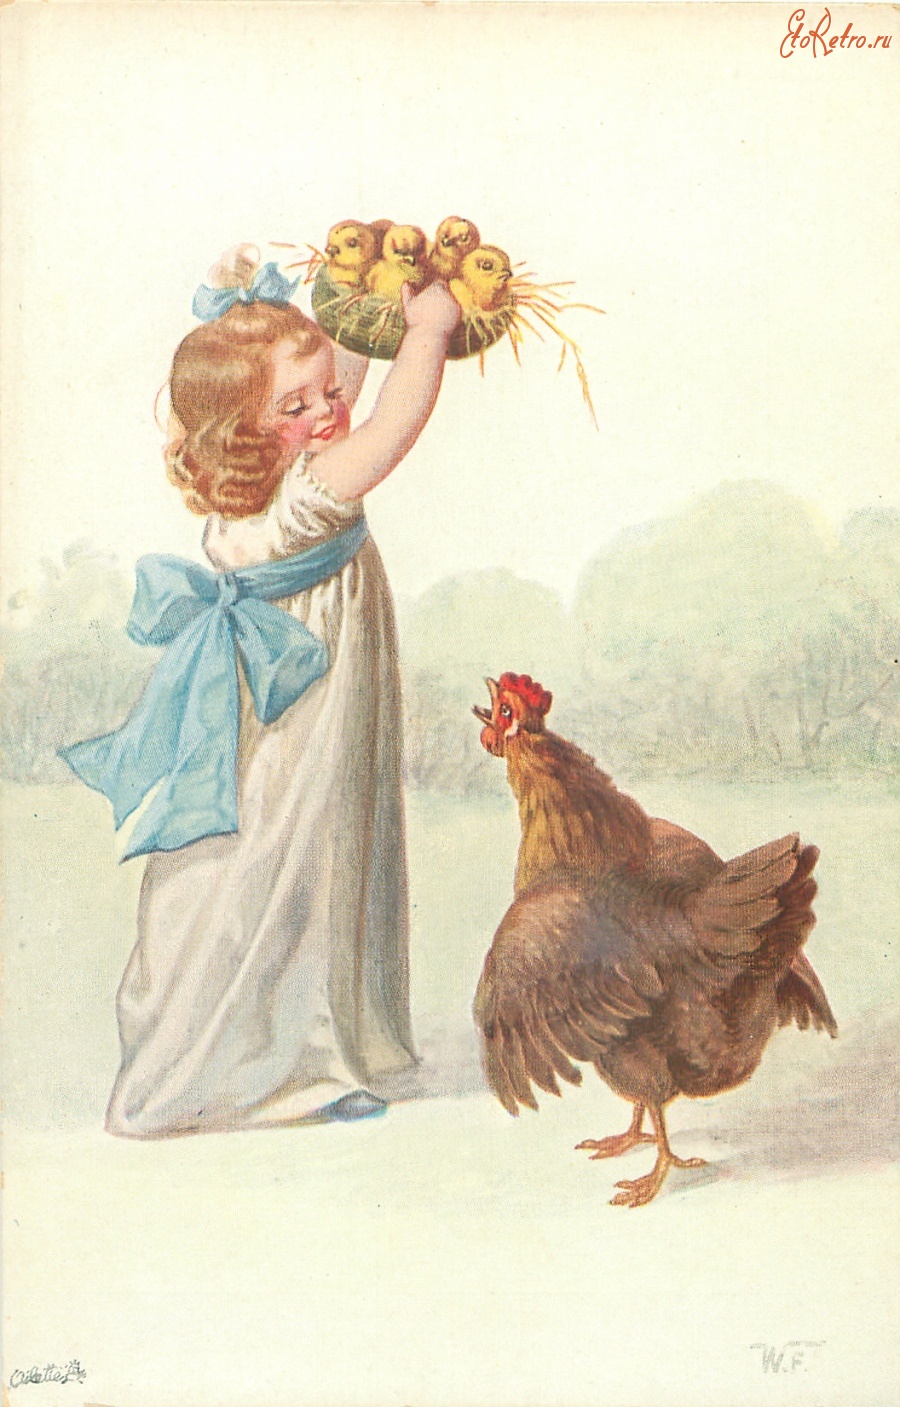 Ретро открытки - Девочка в белом платье, цыплята в корзине и курица